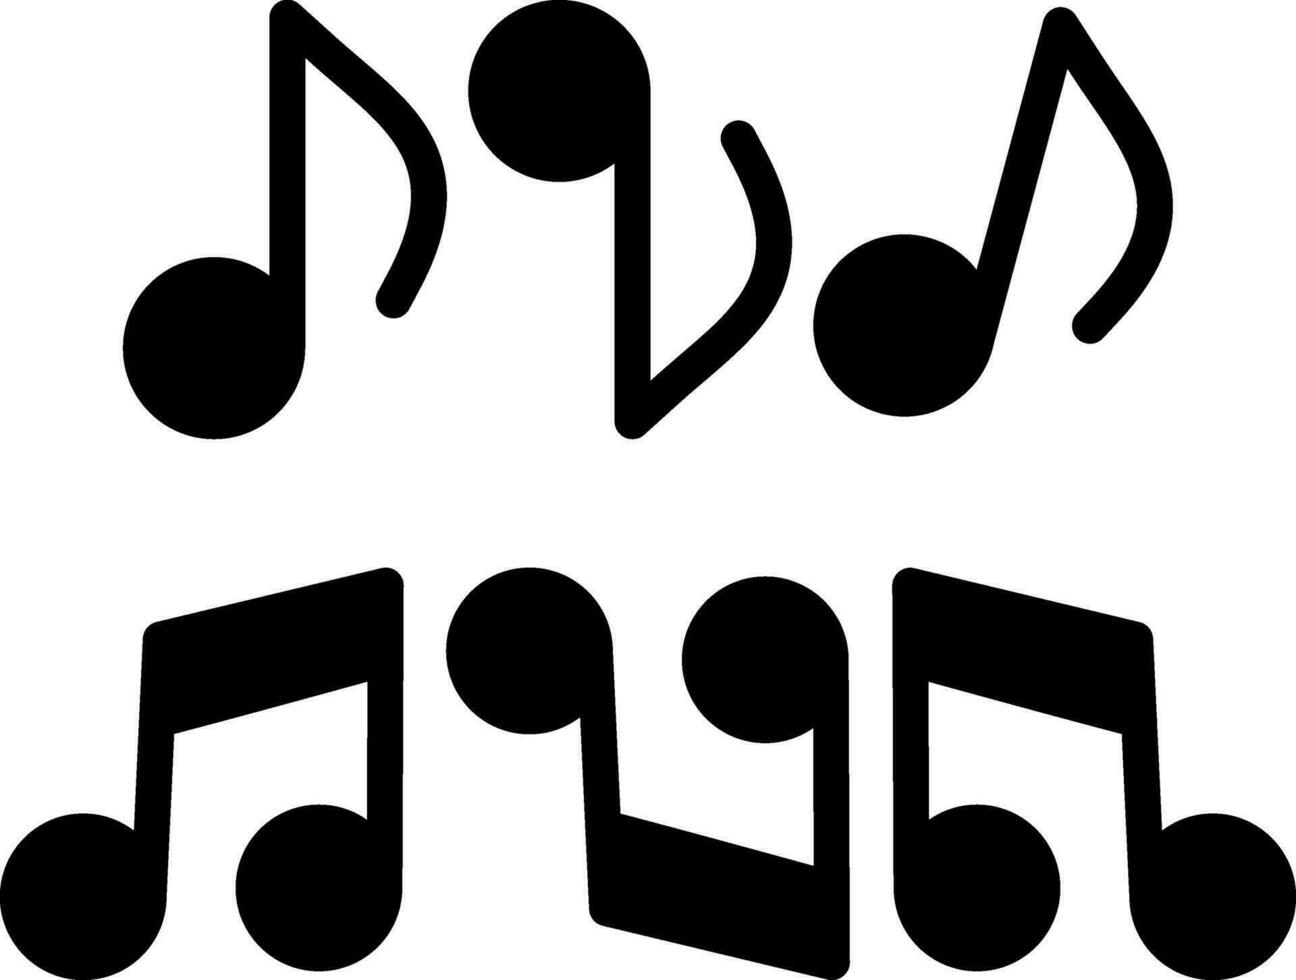 diseño de icono de vector de nota musical